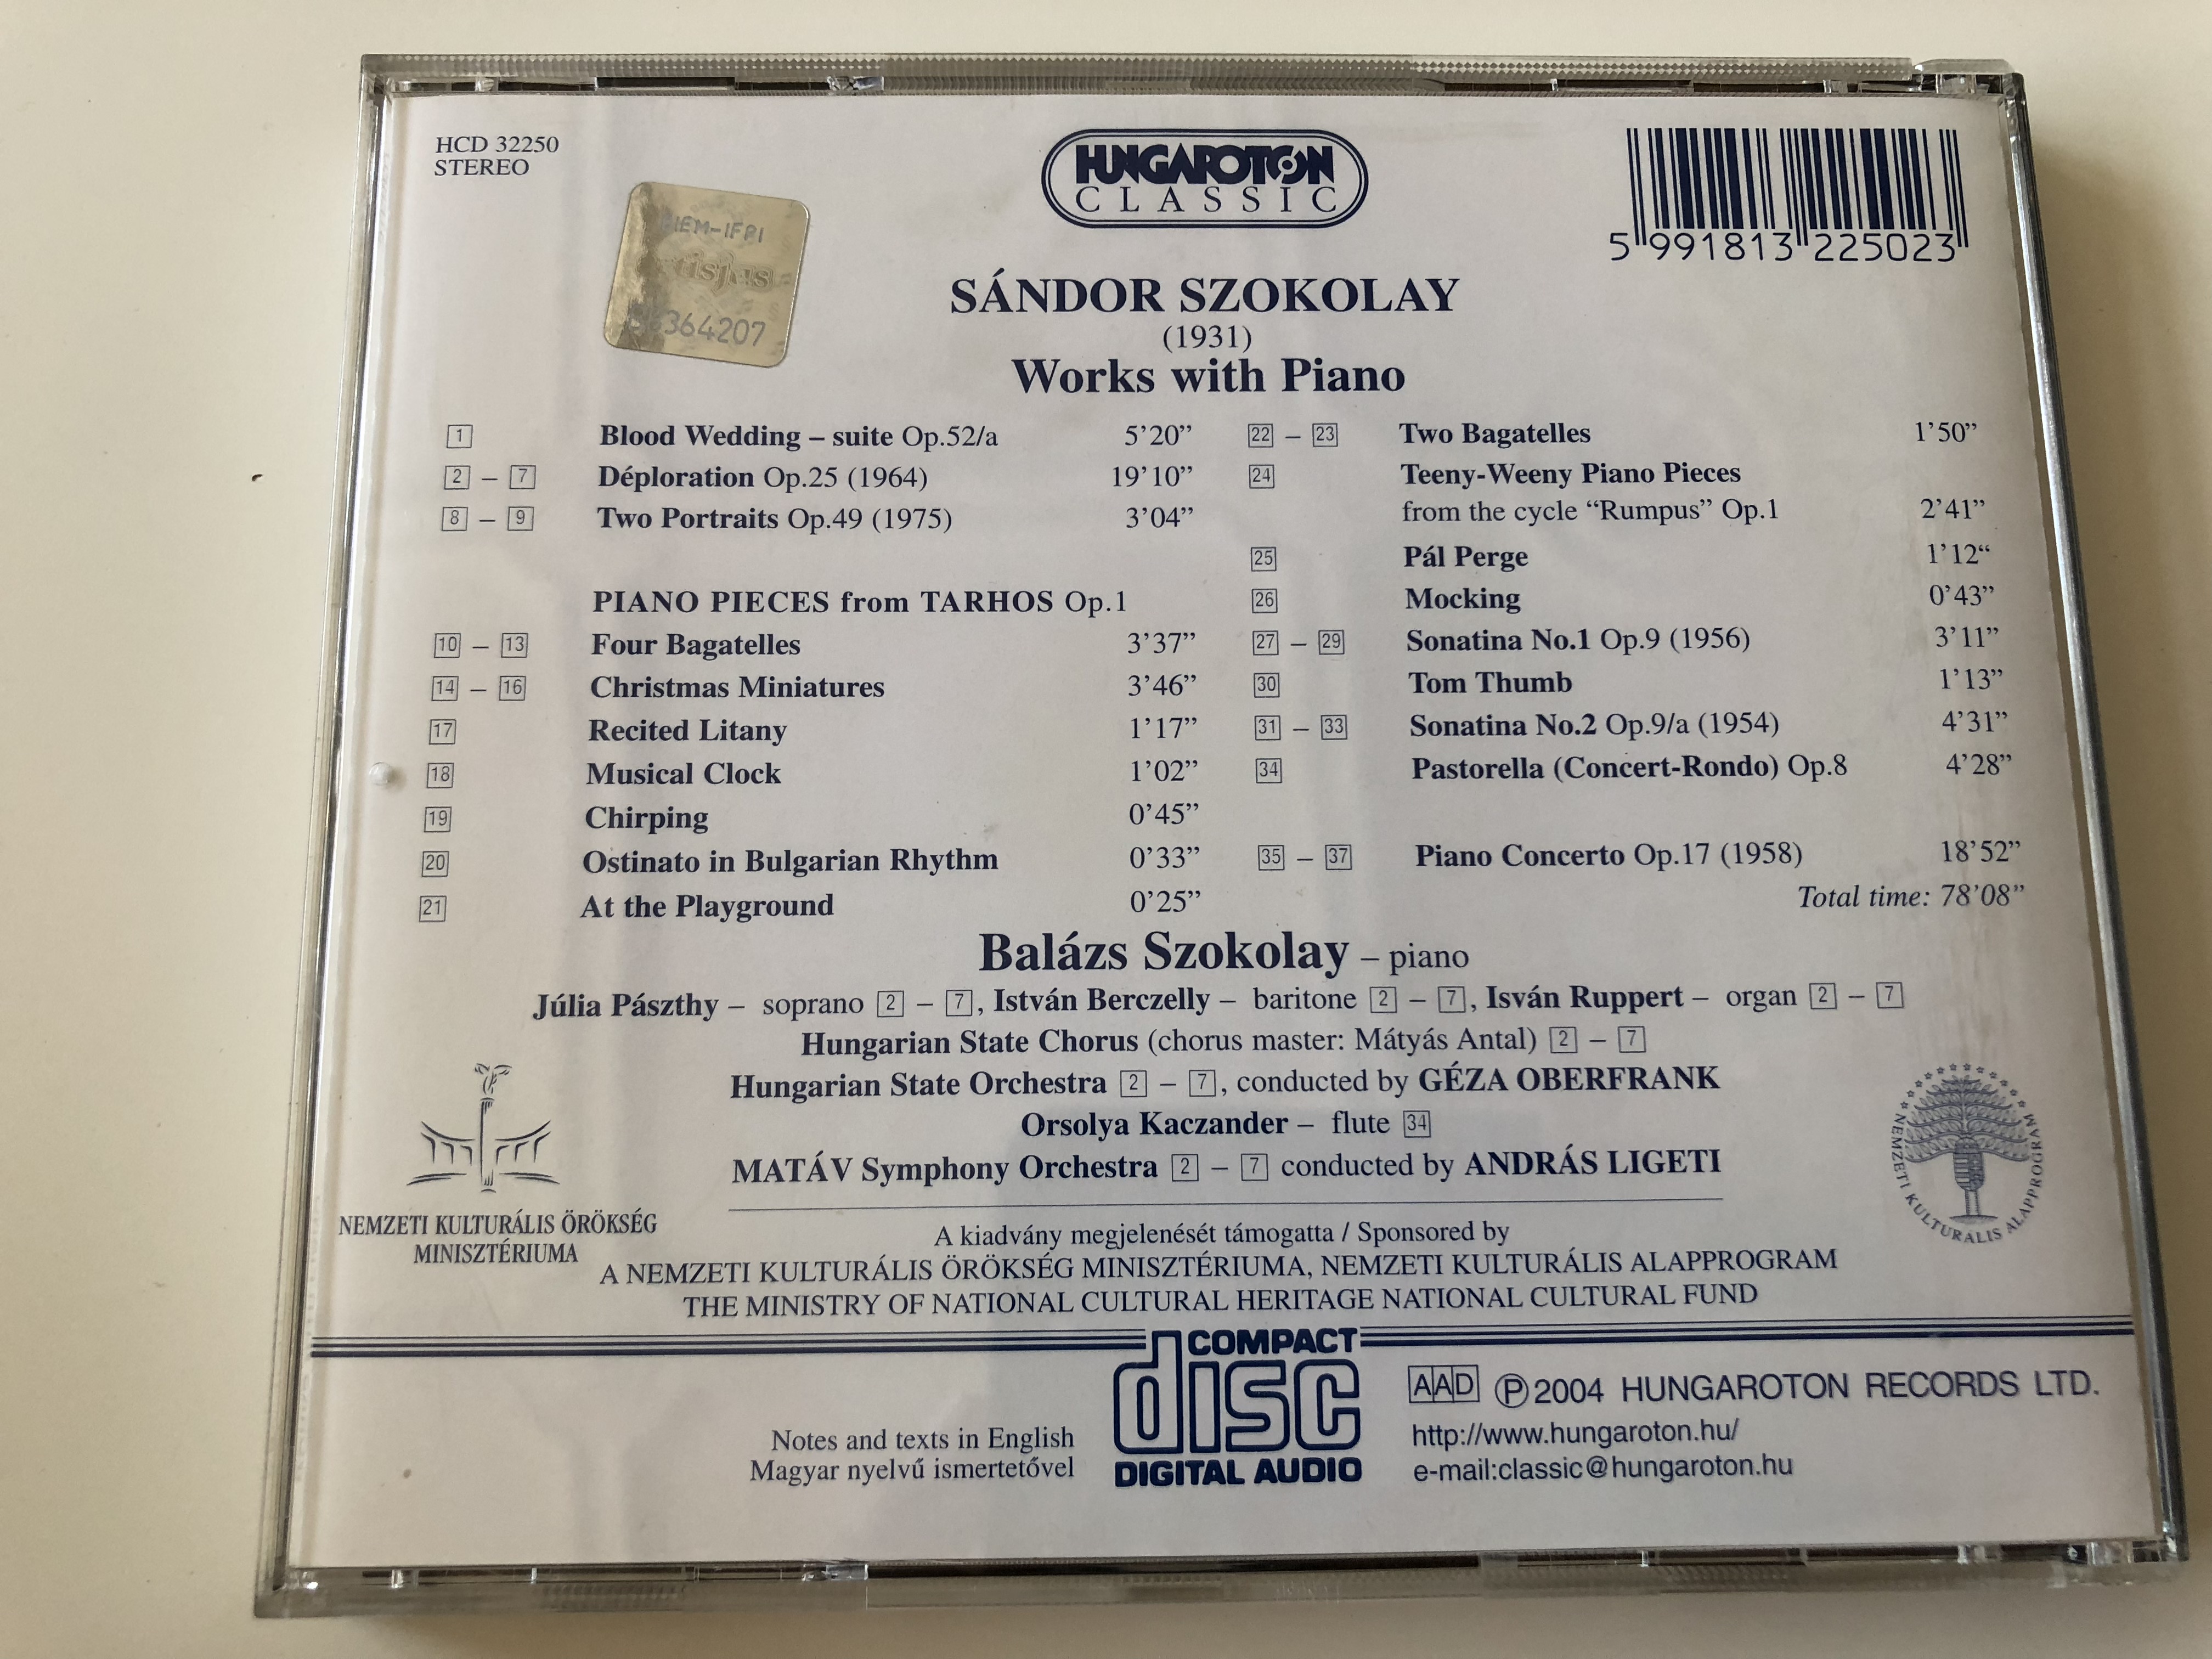 sa-ndor-szokolay-works-with-piano-bala-zs-szokolay-piano-hungaroton-classic-hcd32350img-7512.jpg